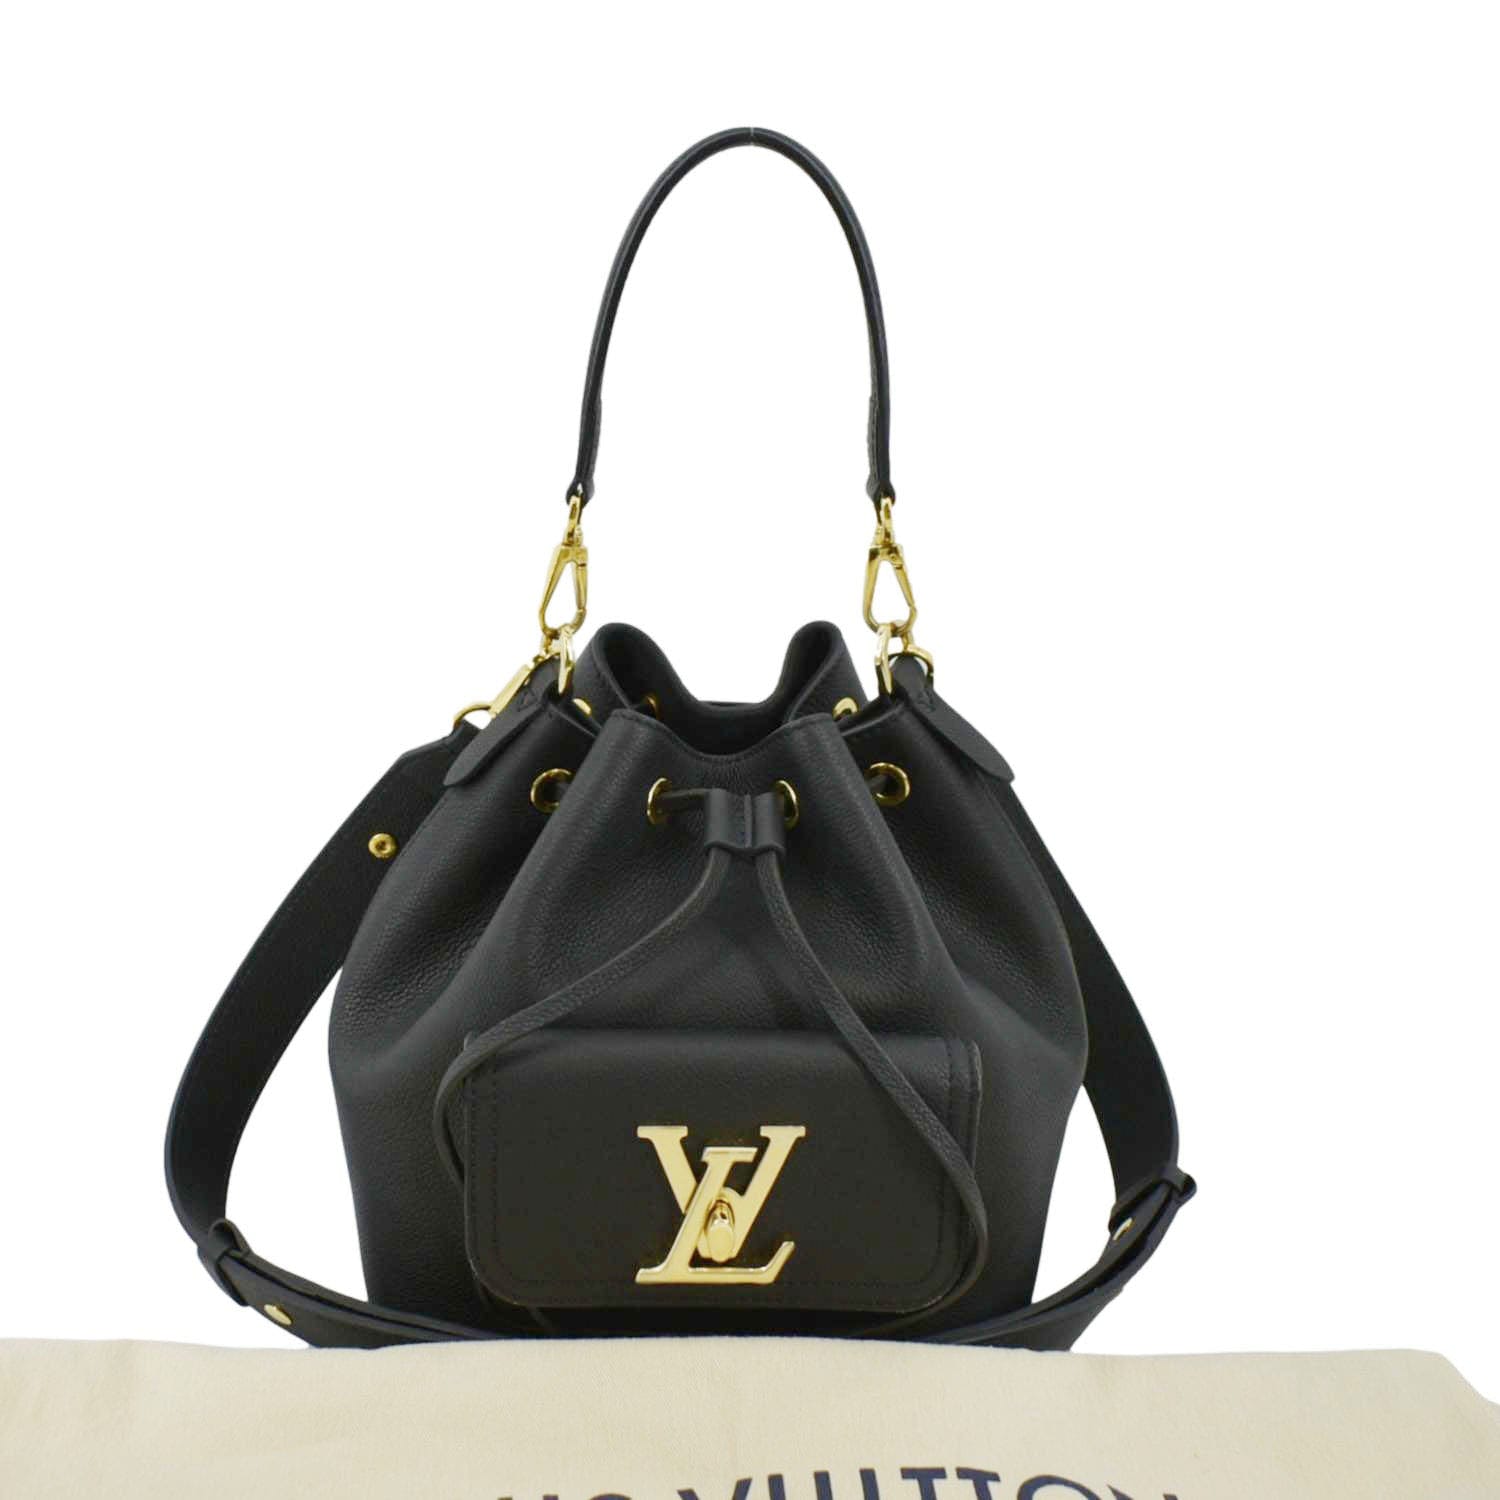 SOLD Authentic Louis Vuitton Lockme Bucket Bag